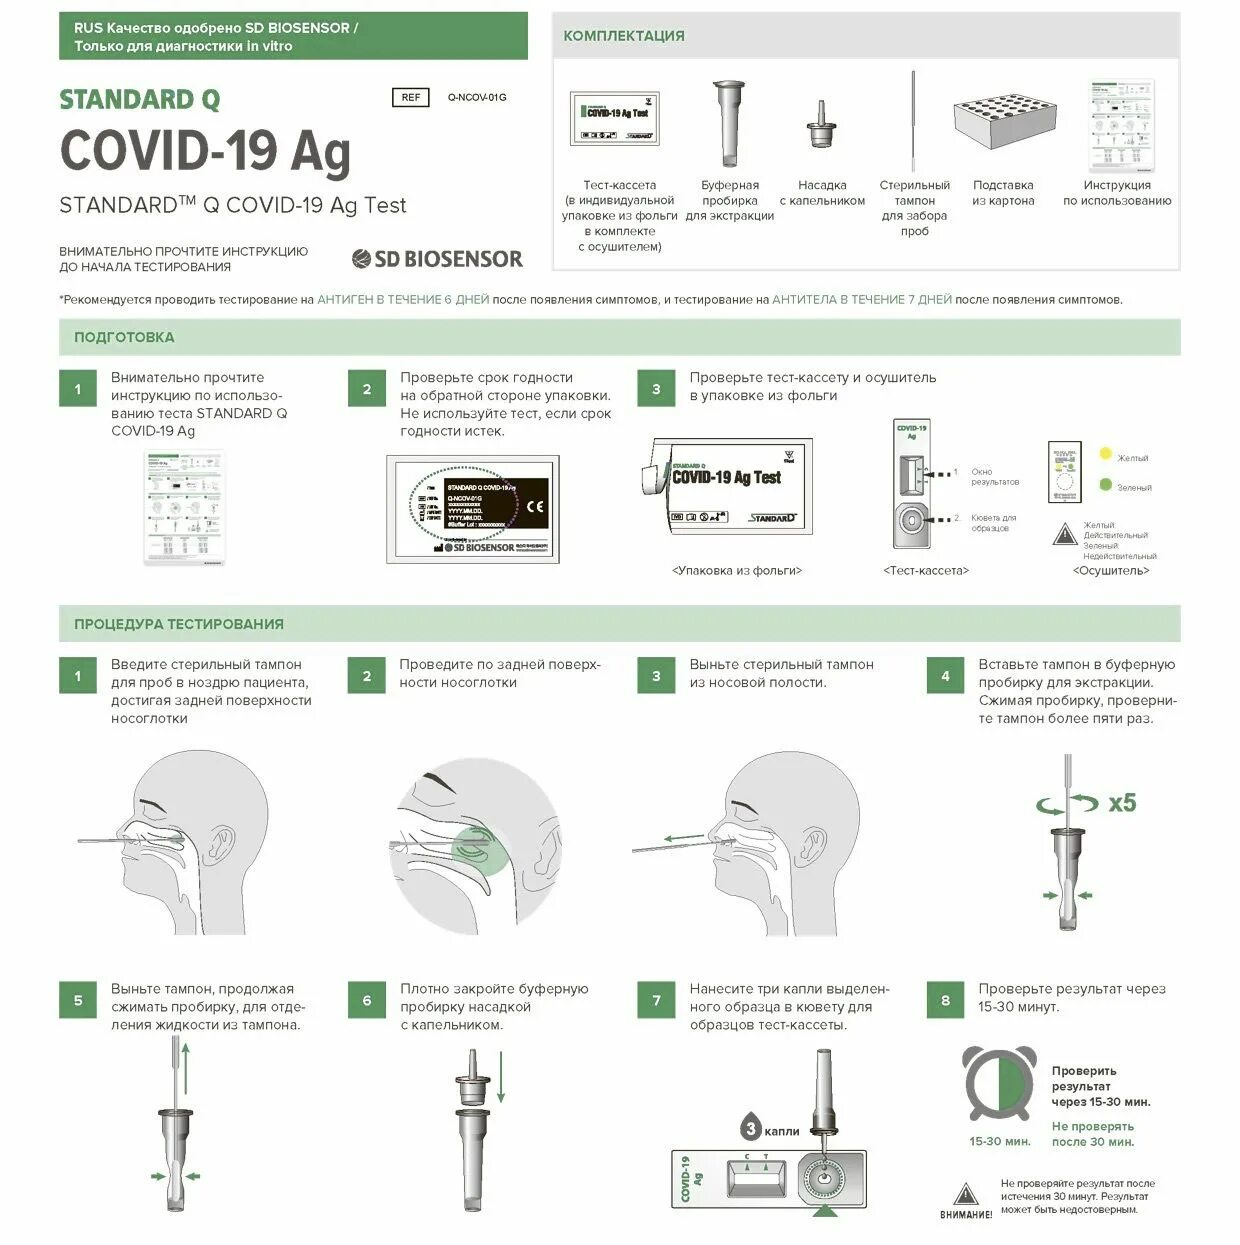 Что значит экспресс тест. Инструкция по экспресс тесту на ковид Covid-19. Тест на ковид Covid-19 AG инструкция. Показания экспресс теста на ковид19. Экспресс-тест на коронавирус Covid-19.